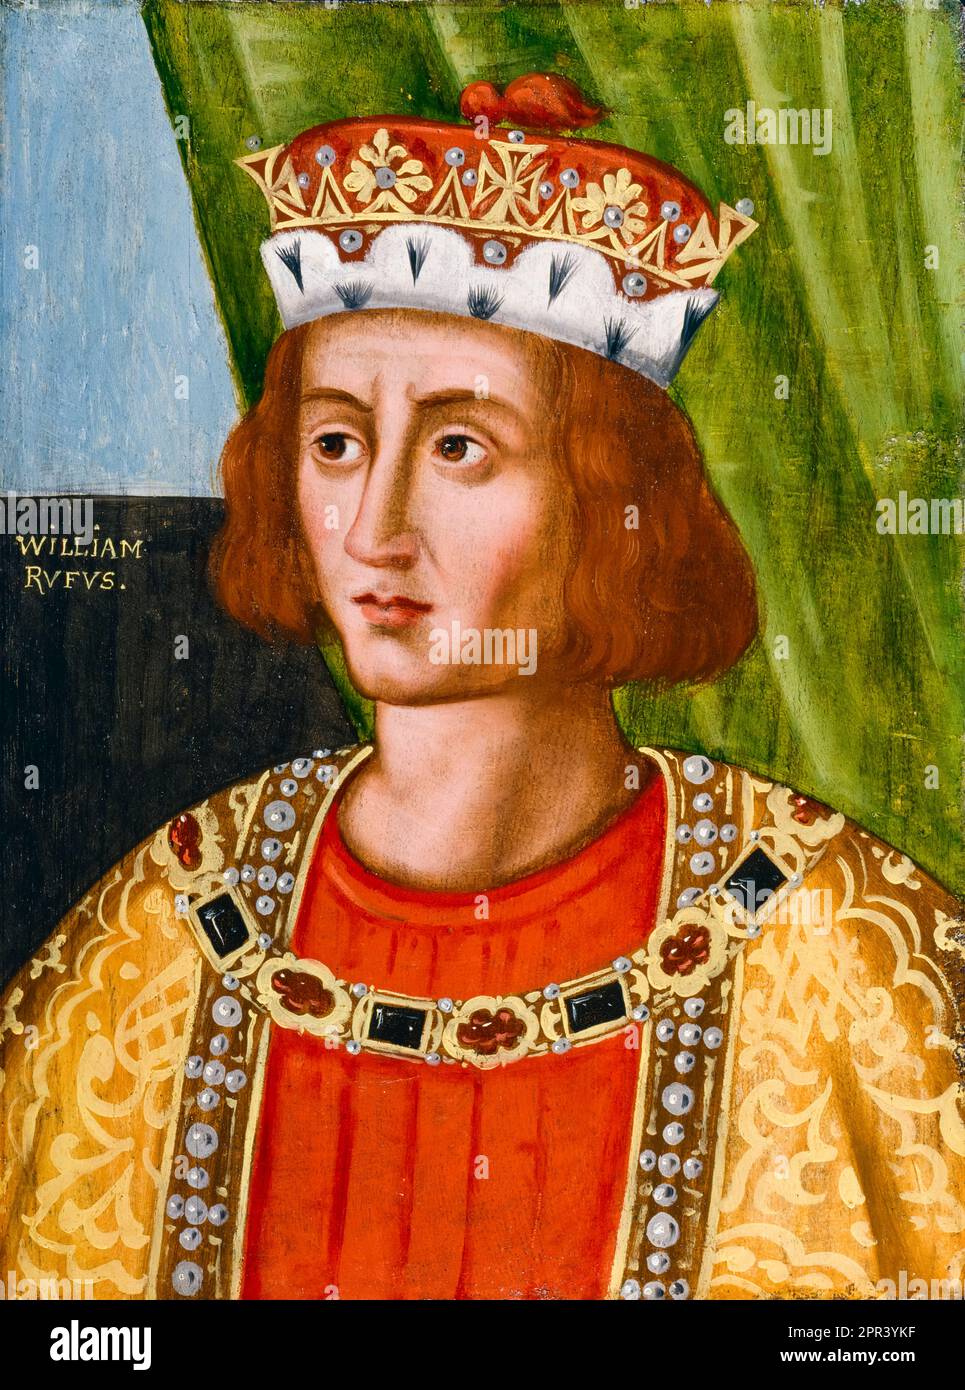 Guglielmo II d'Inghilterra, Guglielmo Rufus (circa 1056-1100), Re d'Inghilterra (1087-1100), dipinto a olio su tavola, prima del 1626 Foto Stock